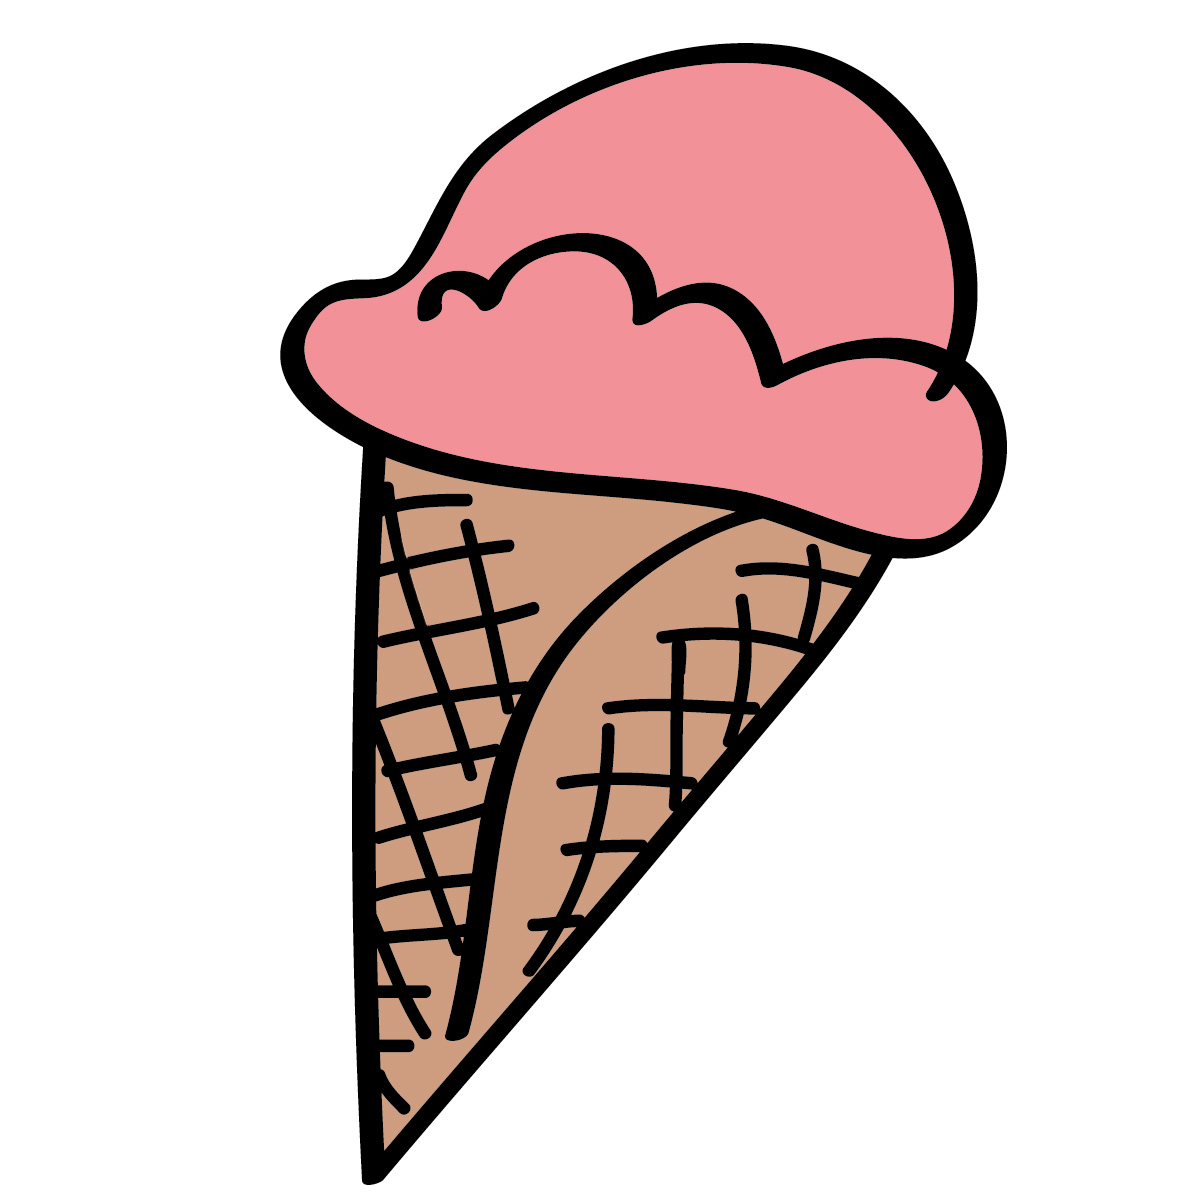 Ice cream cone ice creamne cl